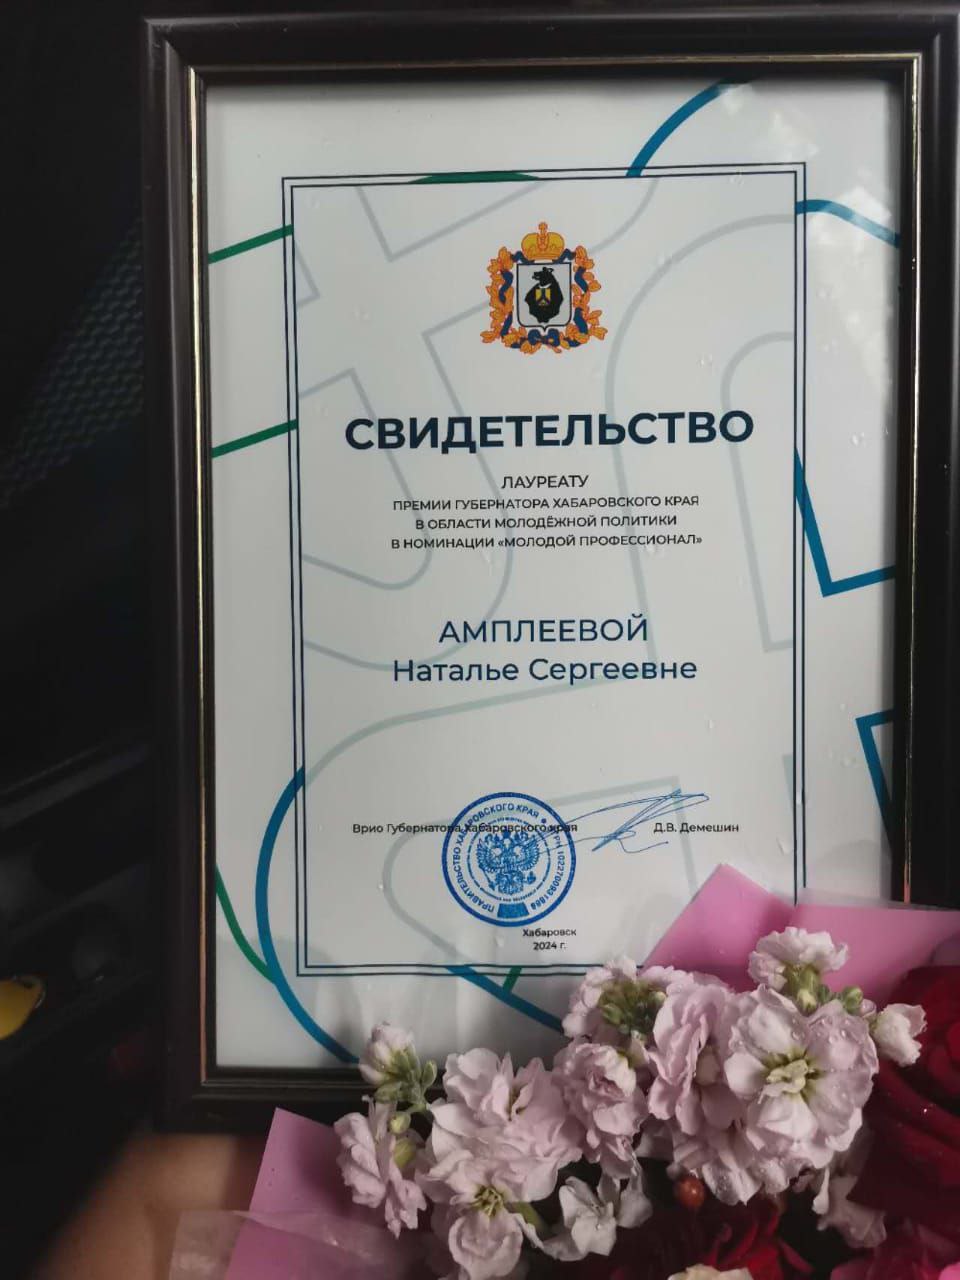 Лауреат премии губернатора Хабаровского края в области молодёжной политики — сотрудник ДВГНБ